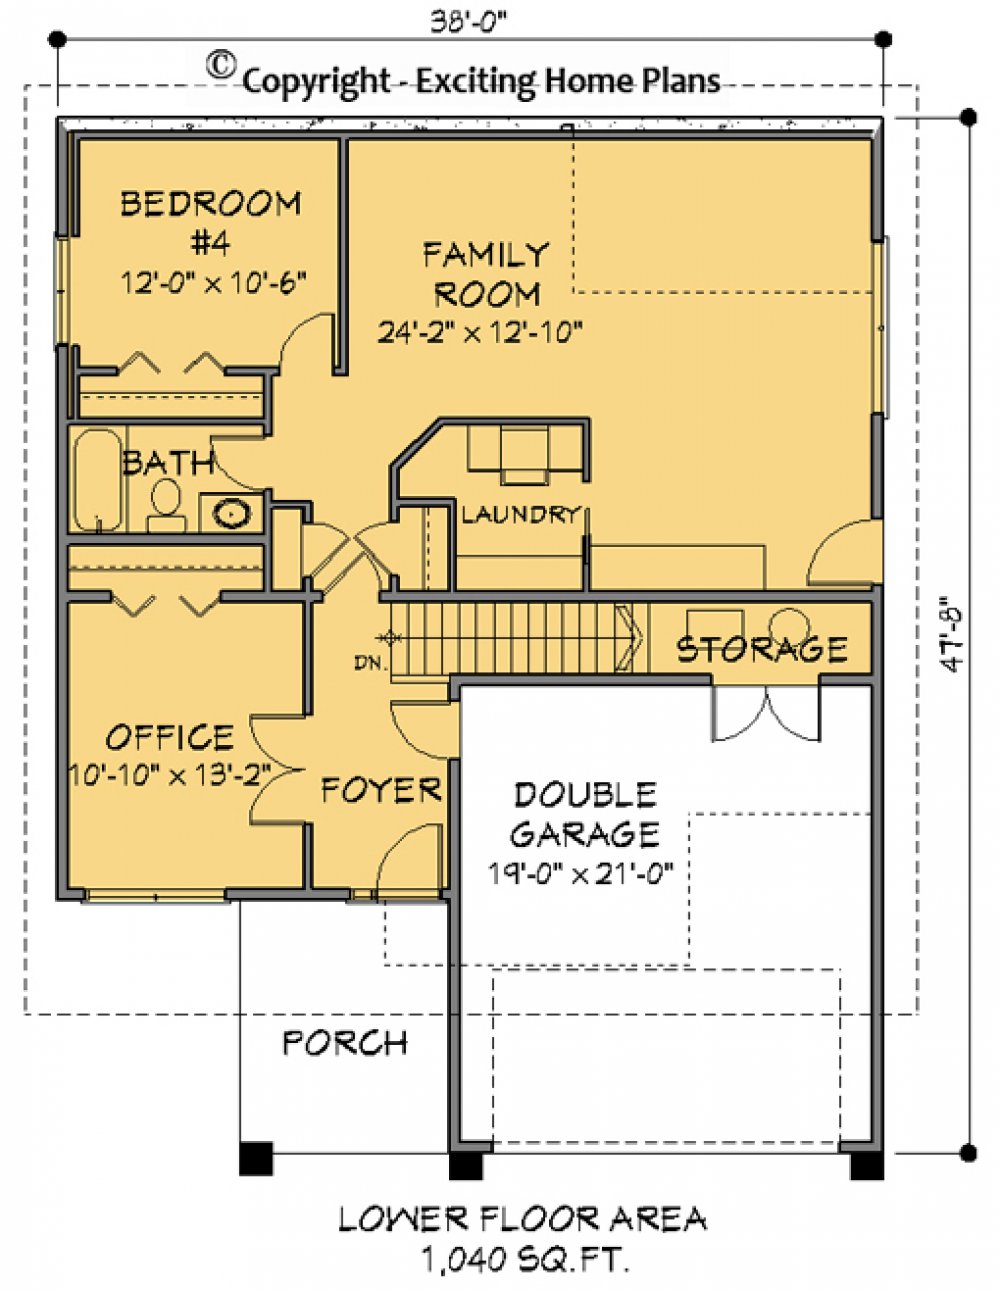 House Plan E1152-10 Lower Floor Plan